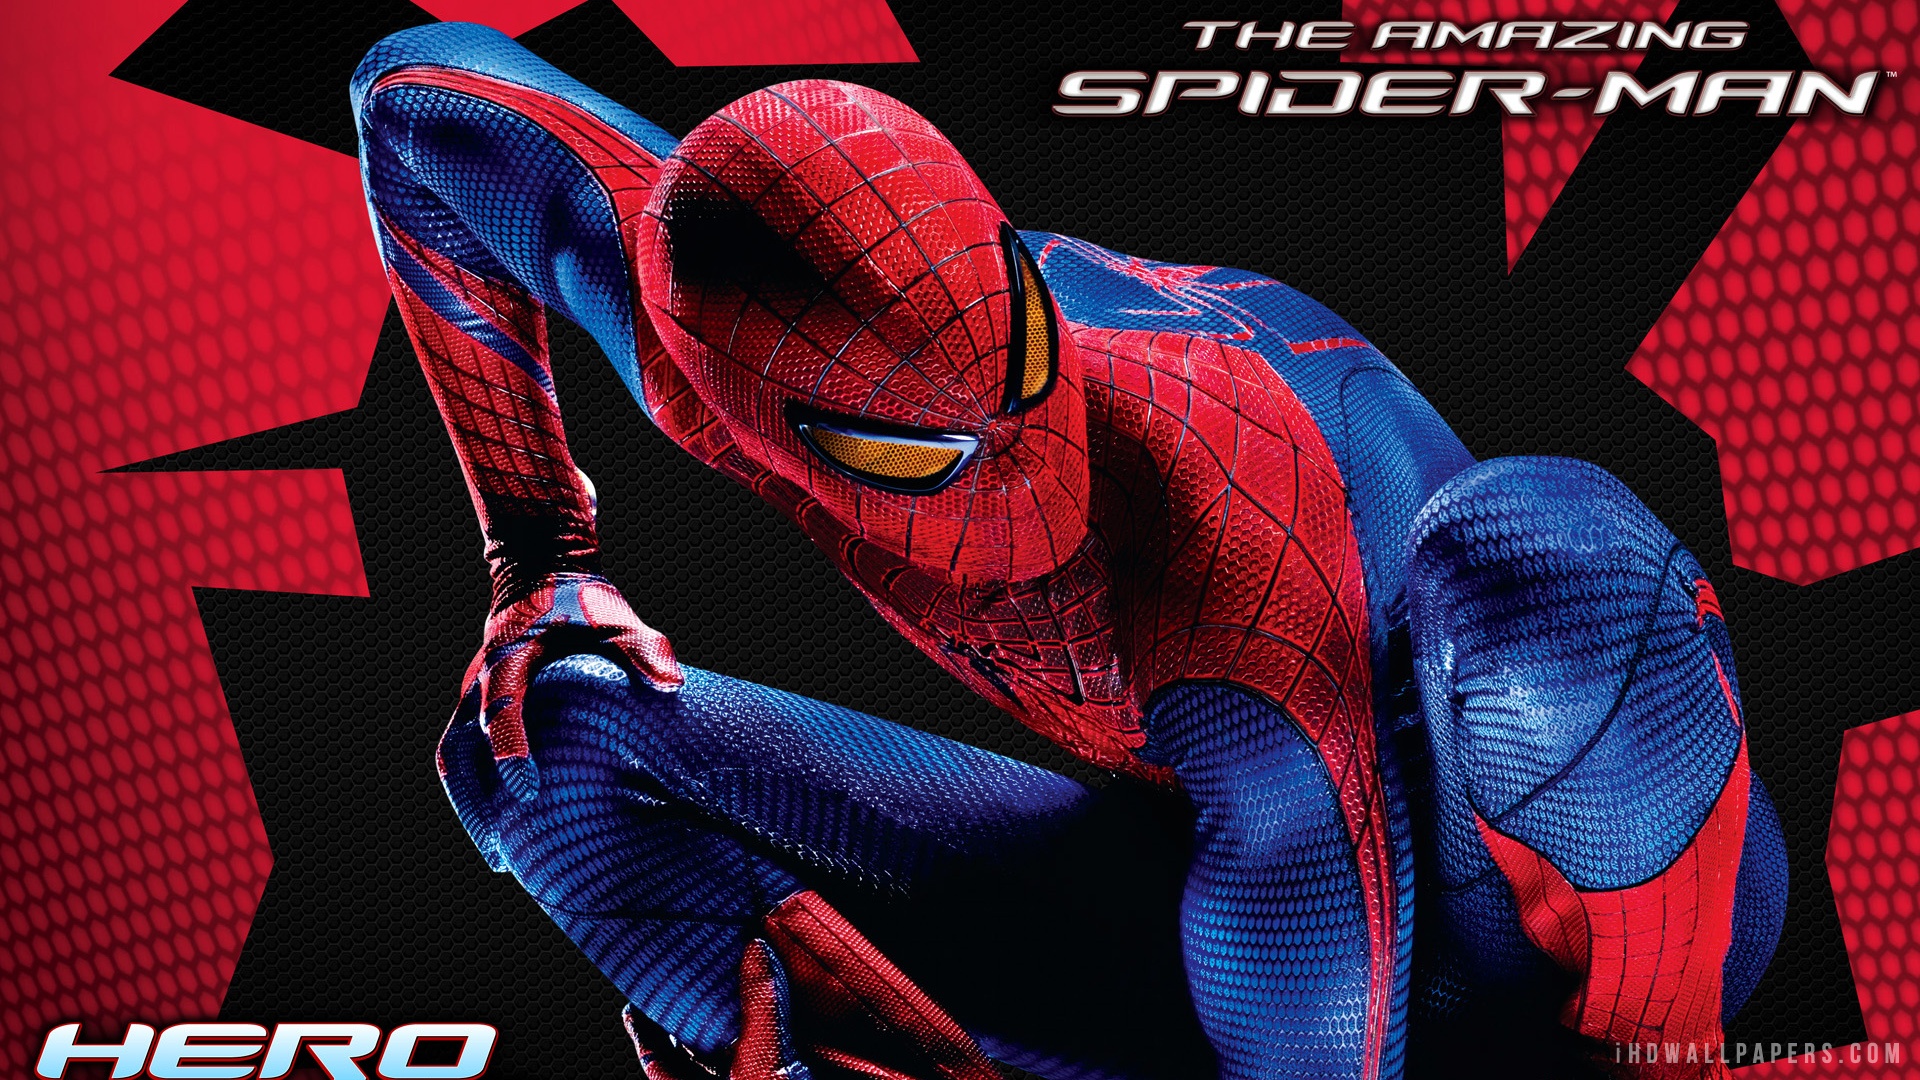  Download Amazing Spider Man 3 WallpaperBackground in 1920x1080 HD